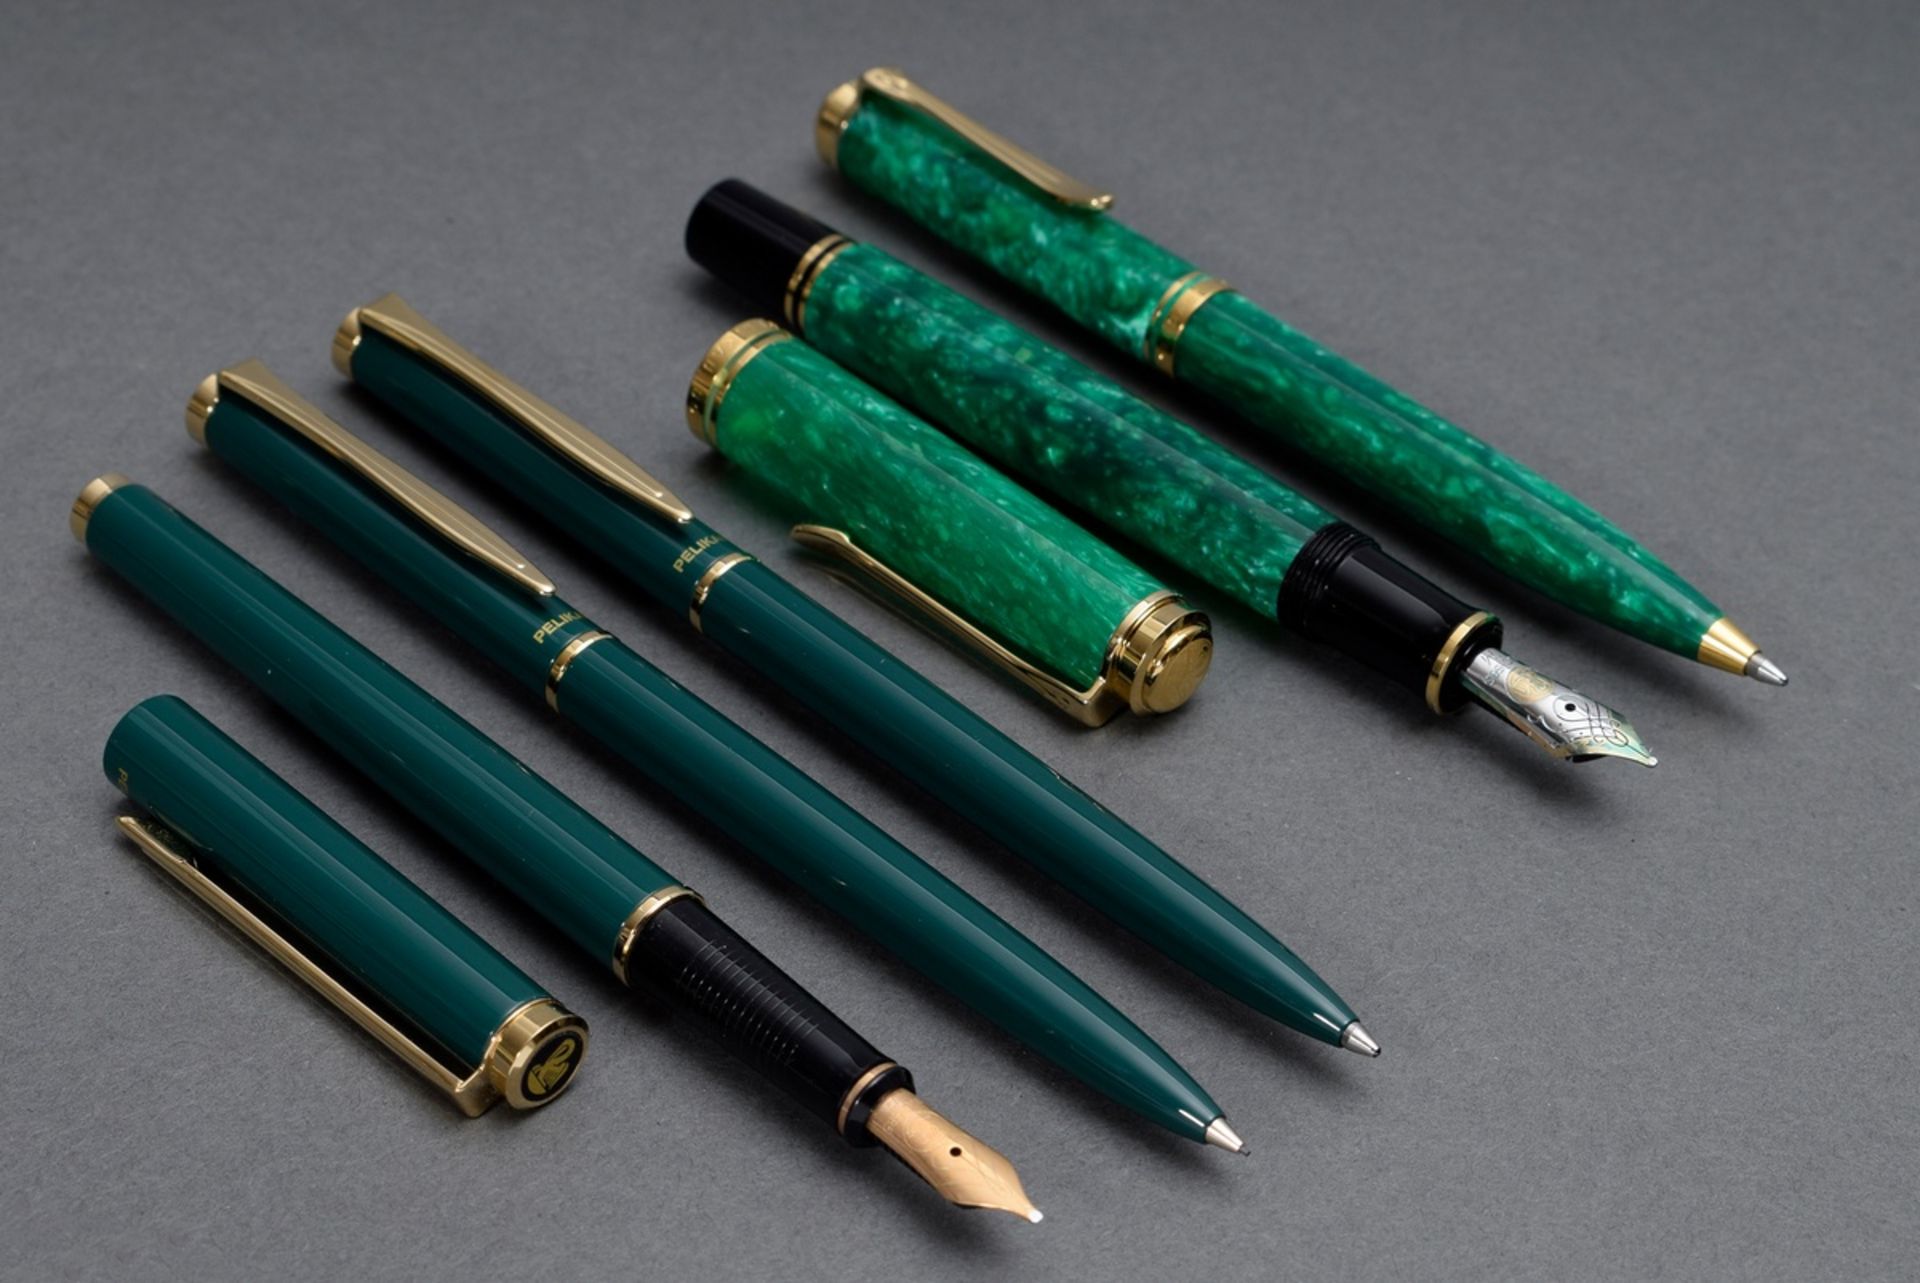 5 Diverse grüne Pelikan Schreibgeräte, u.a. „Souverän“: 2 Füllfederhalter mit GG/WG 585 Feder, 2 Ku